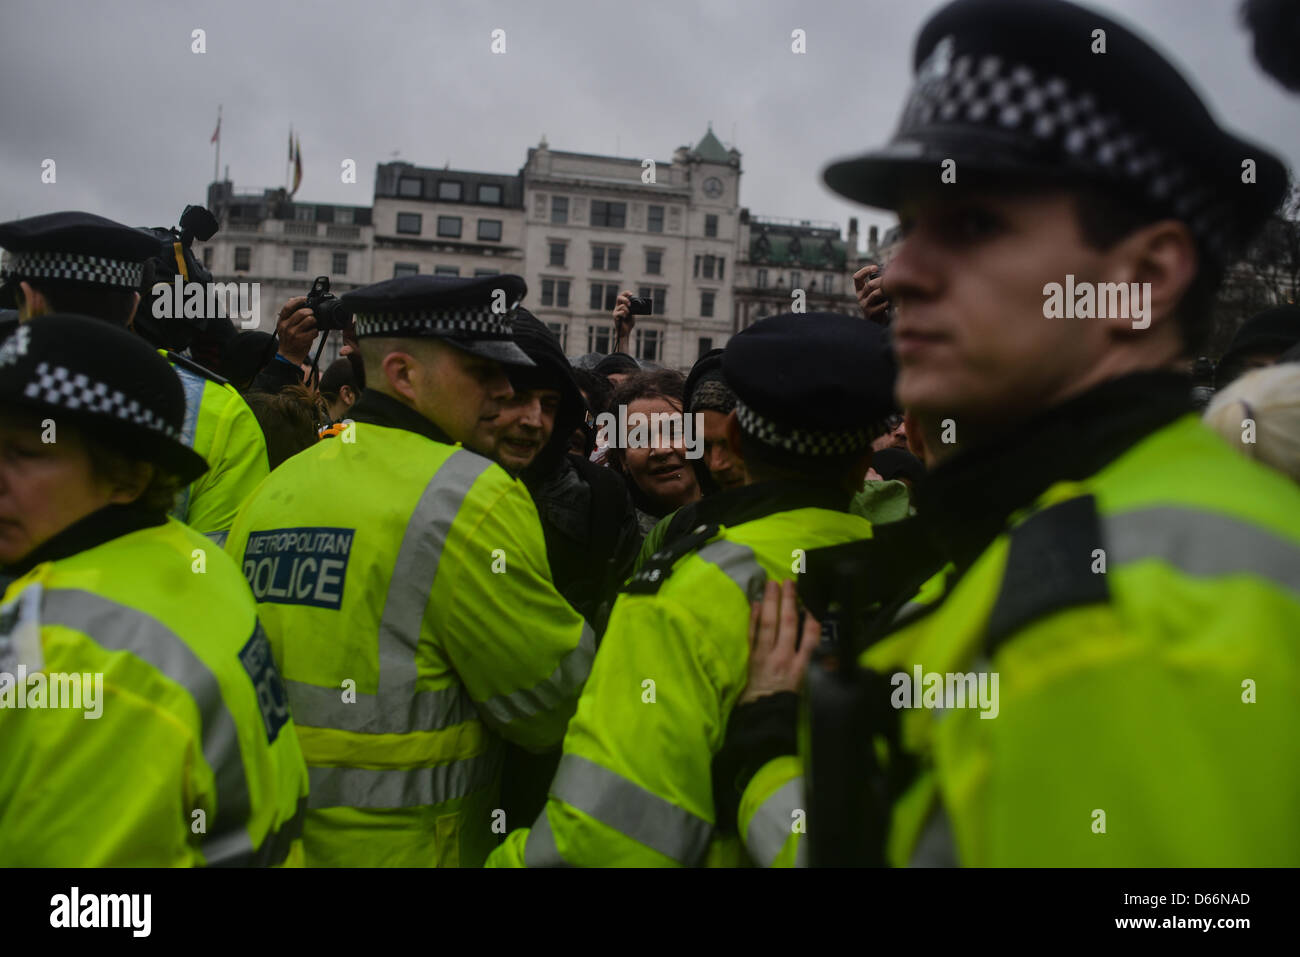 London, UK, 13. April 2013, Offiziere zurückhalten Demonstranten als Polizei und Demonstranten Kampf um ein sound Sytem. Ein Anti-Thatcher-Protest fand auf dem Trafalgar Square, dem Ex-Premier Tod zu markieren. TiNite Fotografie/Alamy Live-Nachrichten Stockfoto